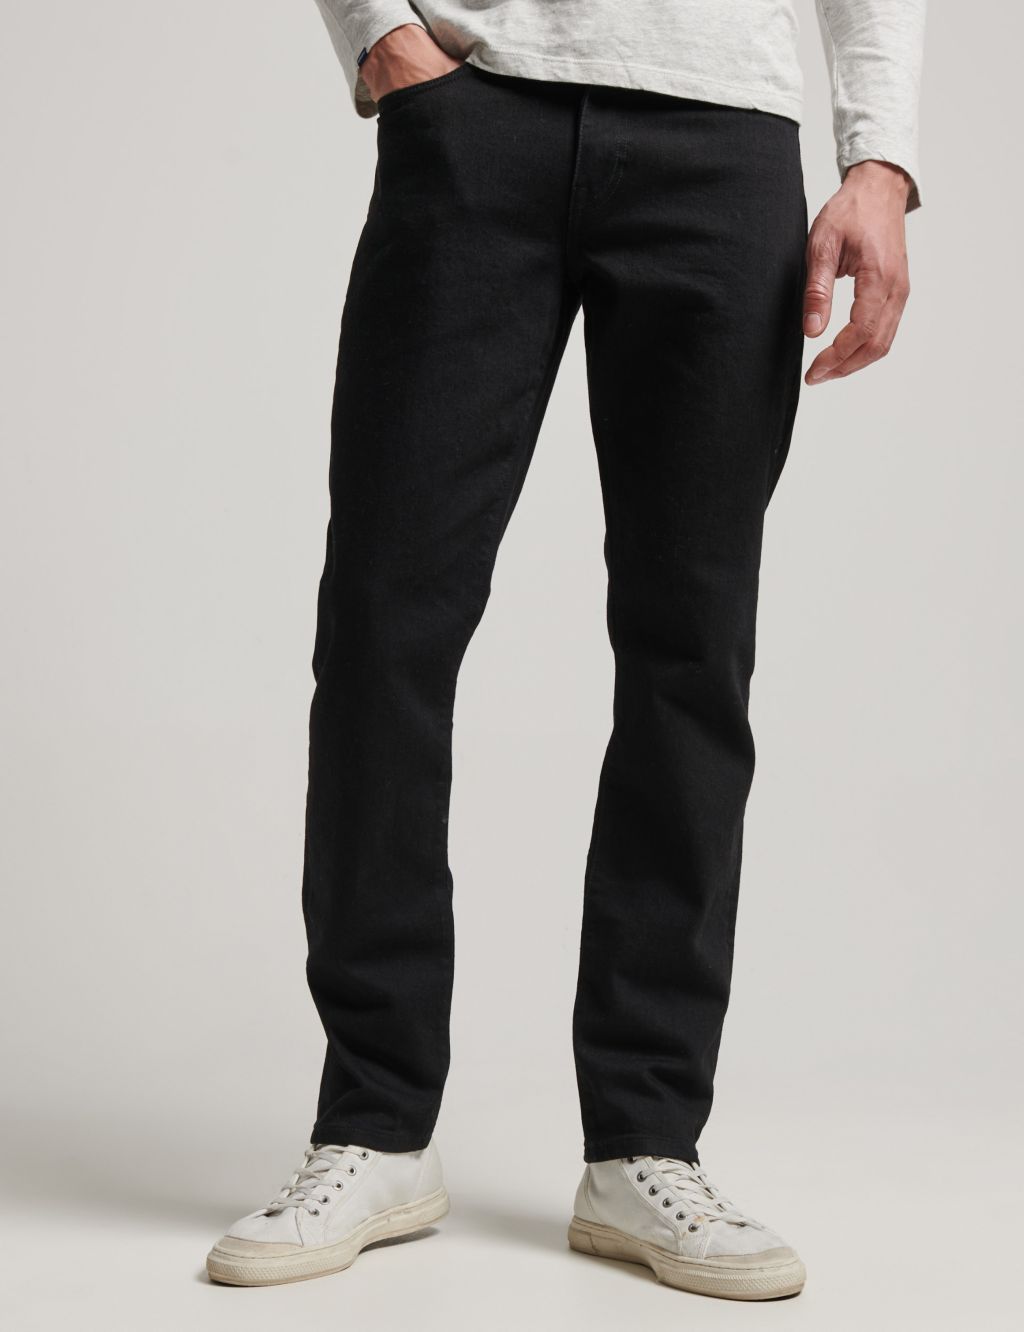 Slim Fit 5 Pocket Jeans image 1